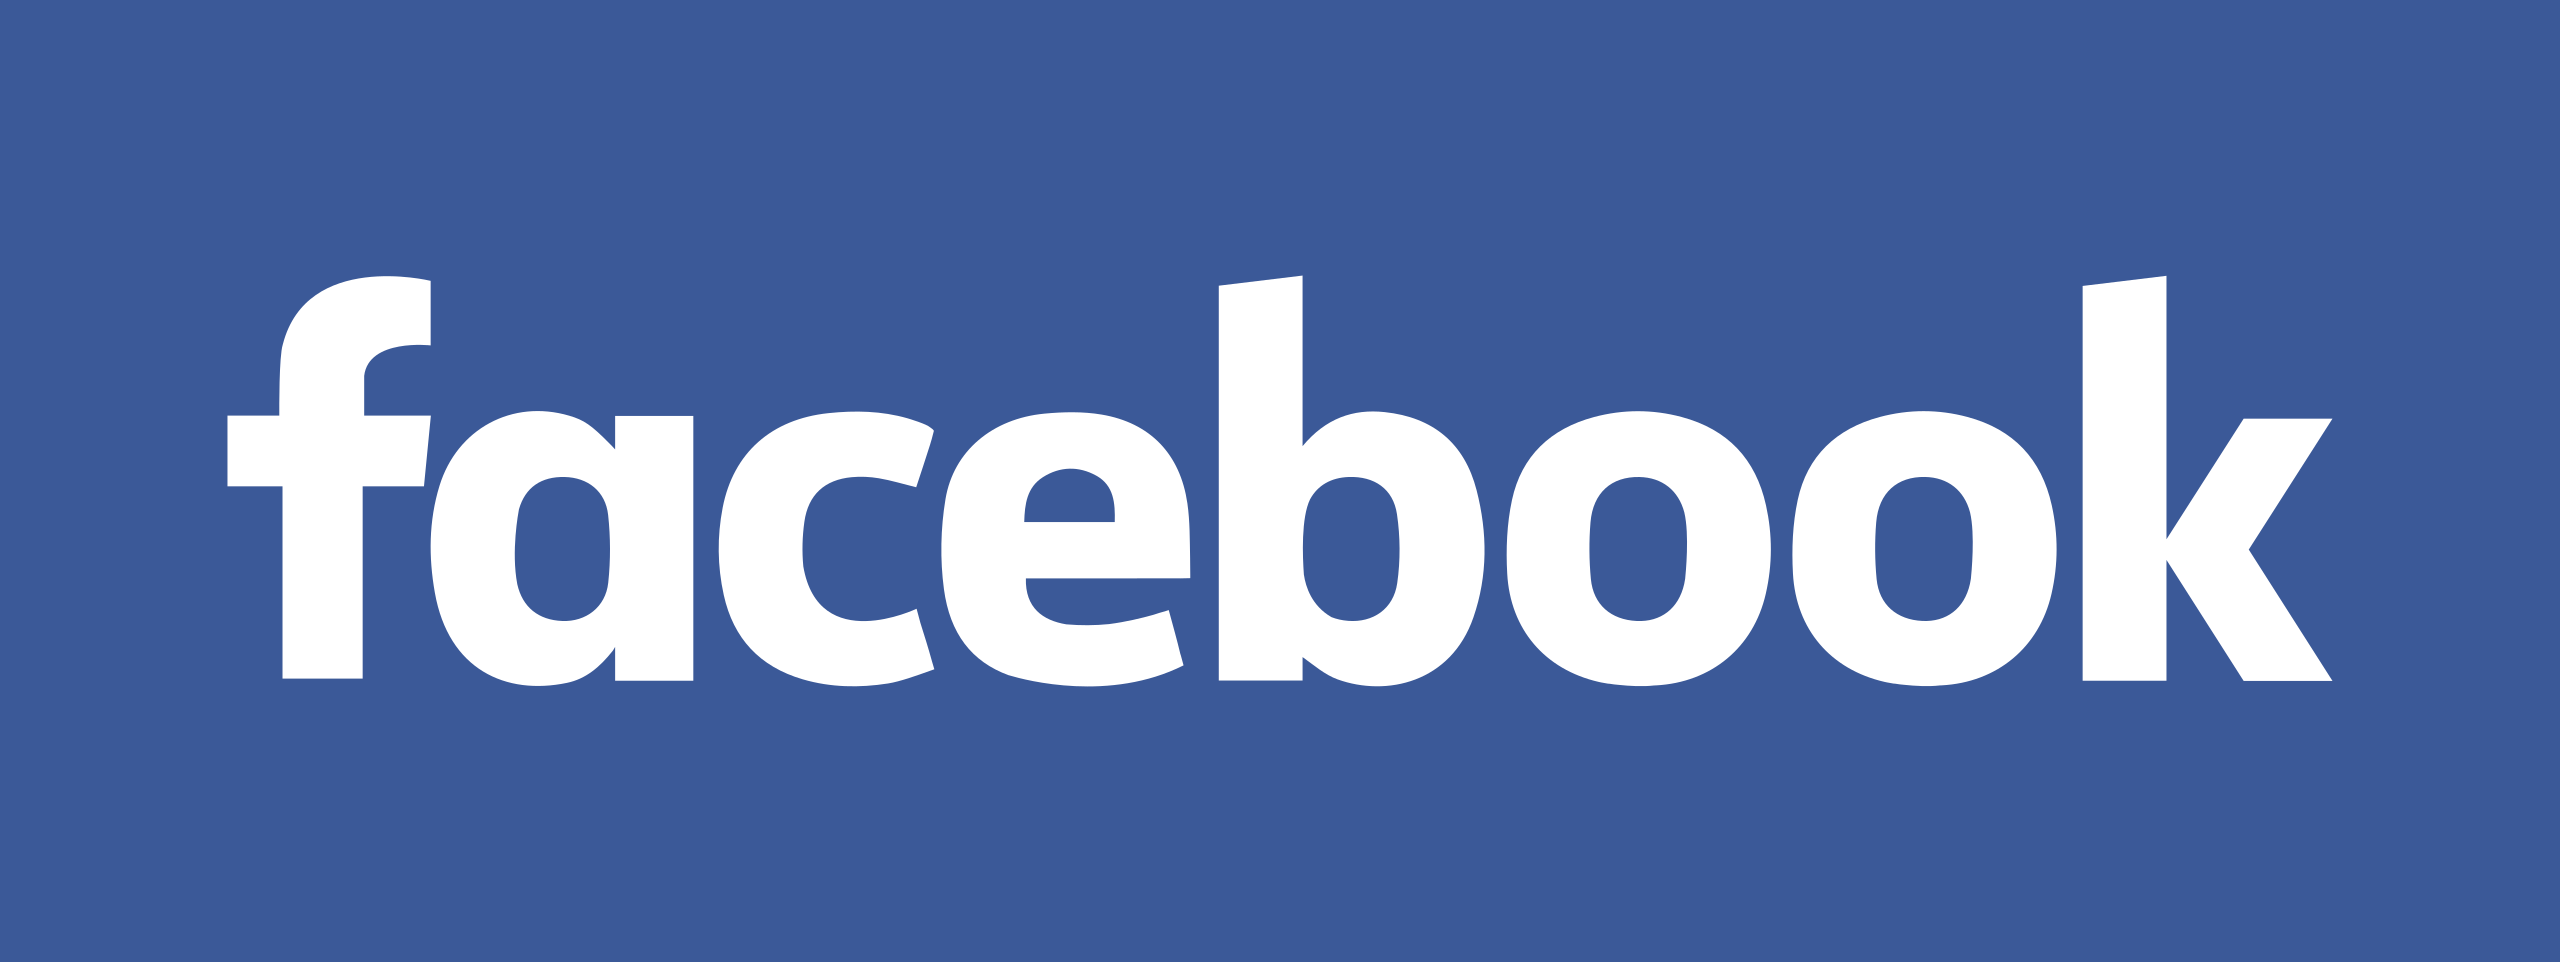 Facebook_New_Logo_(2015)